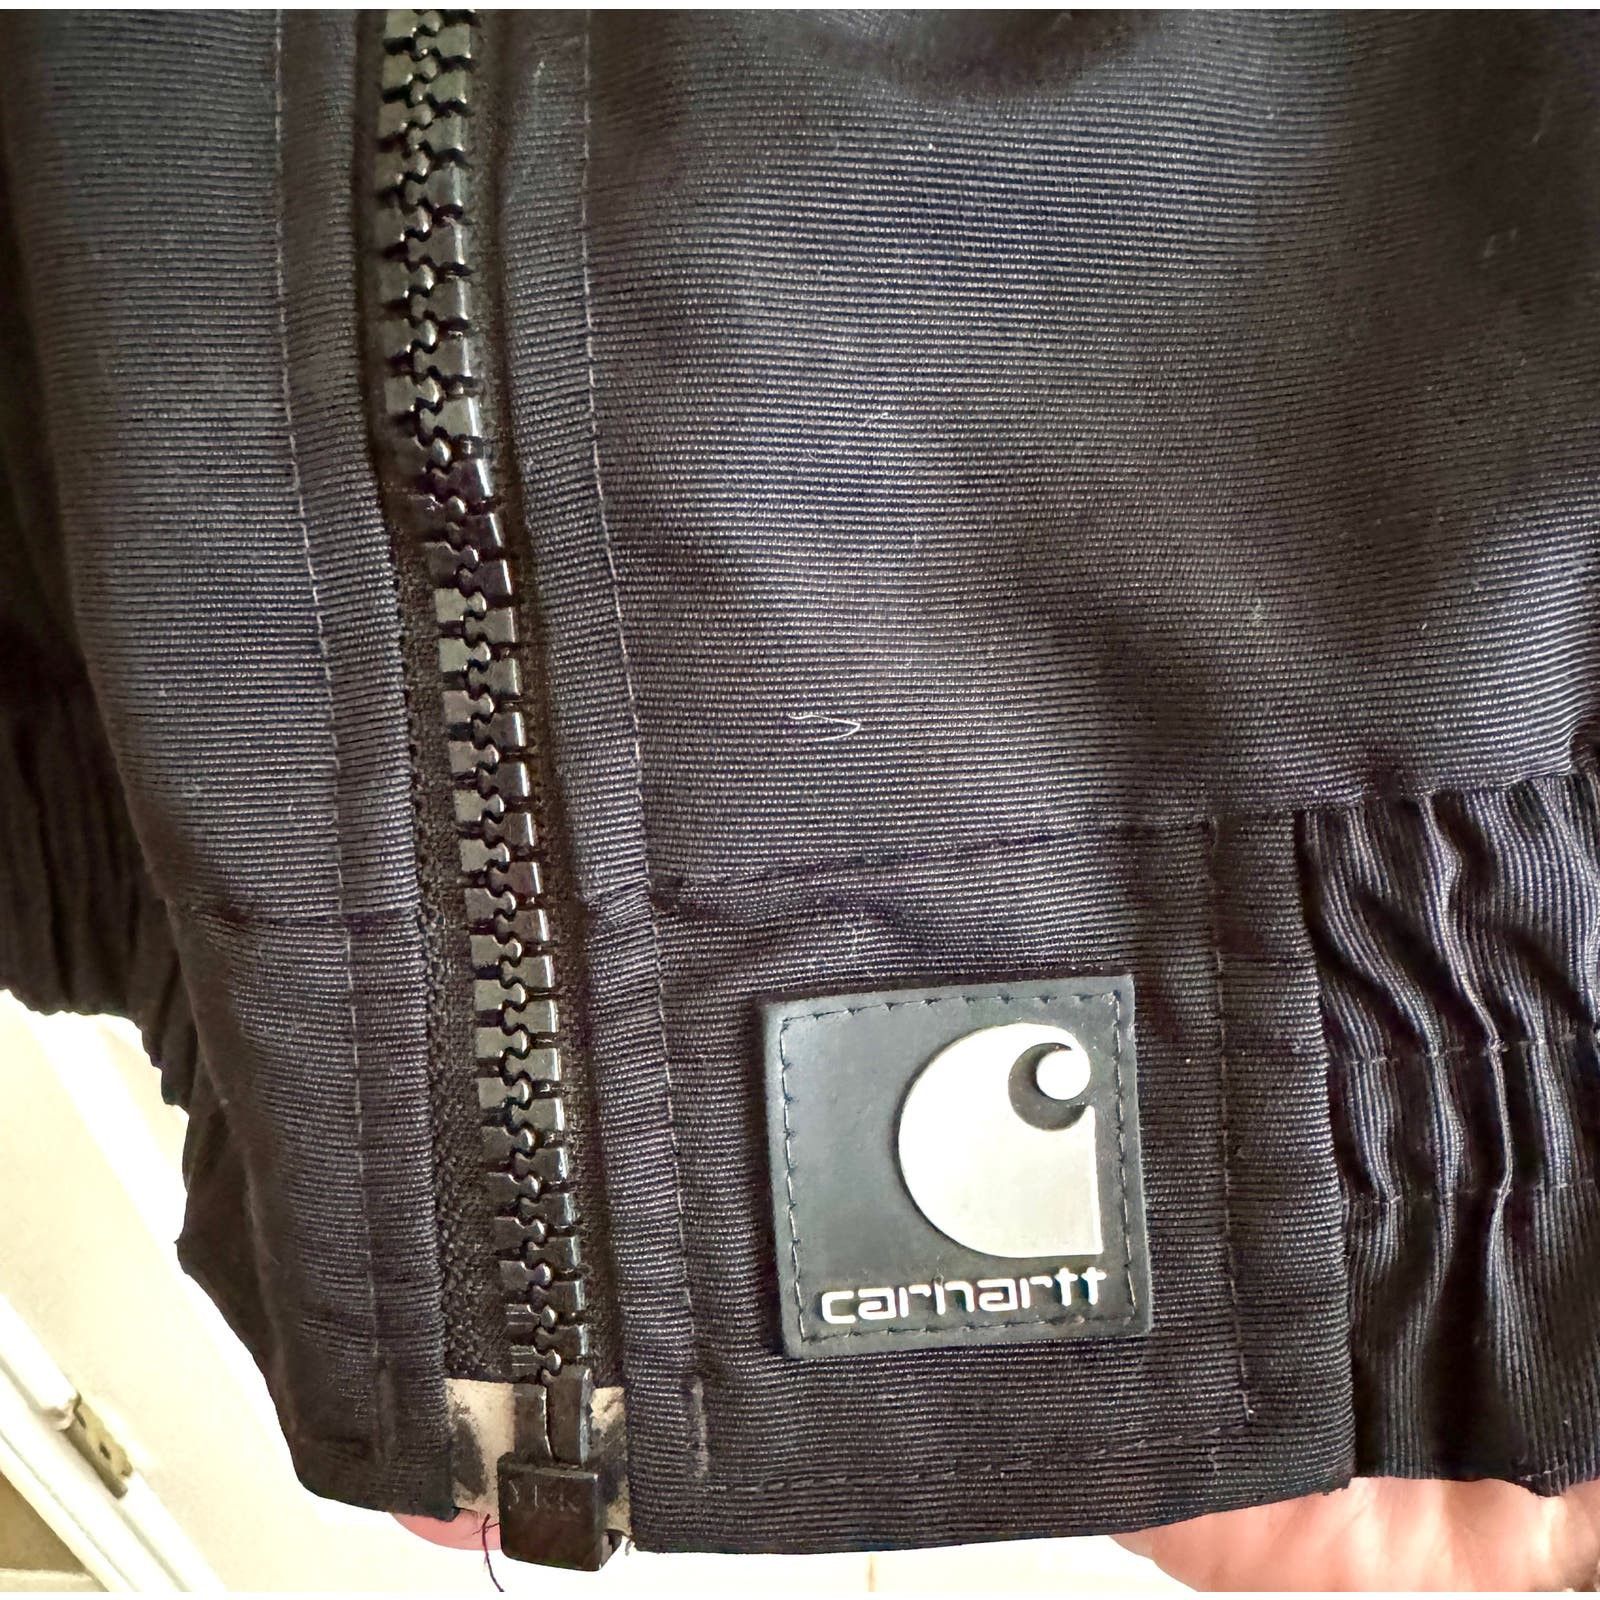 Carhartt Vintage Carhartt Workshield Jacket Fleece Lined Black J72 Size US XL / EU 56 / 4 - 5 Thumbnail